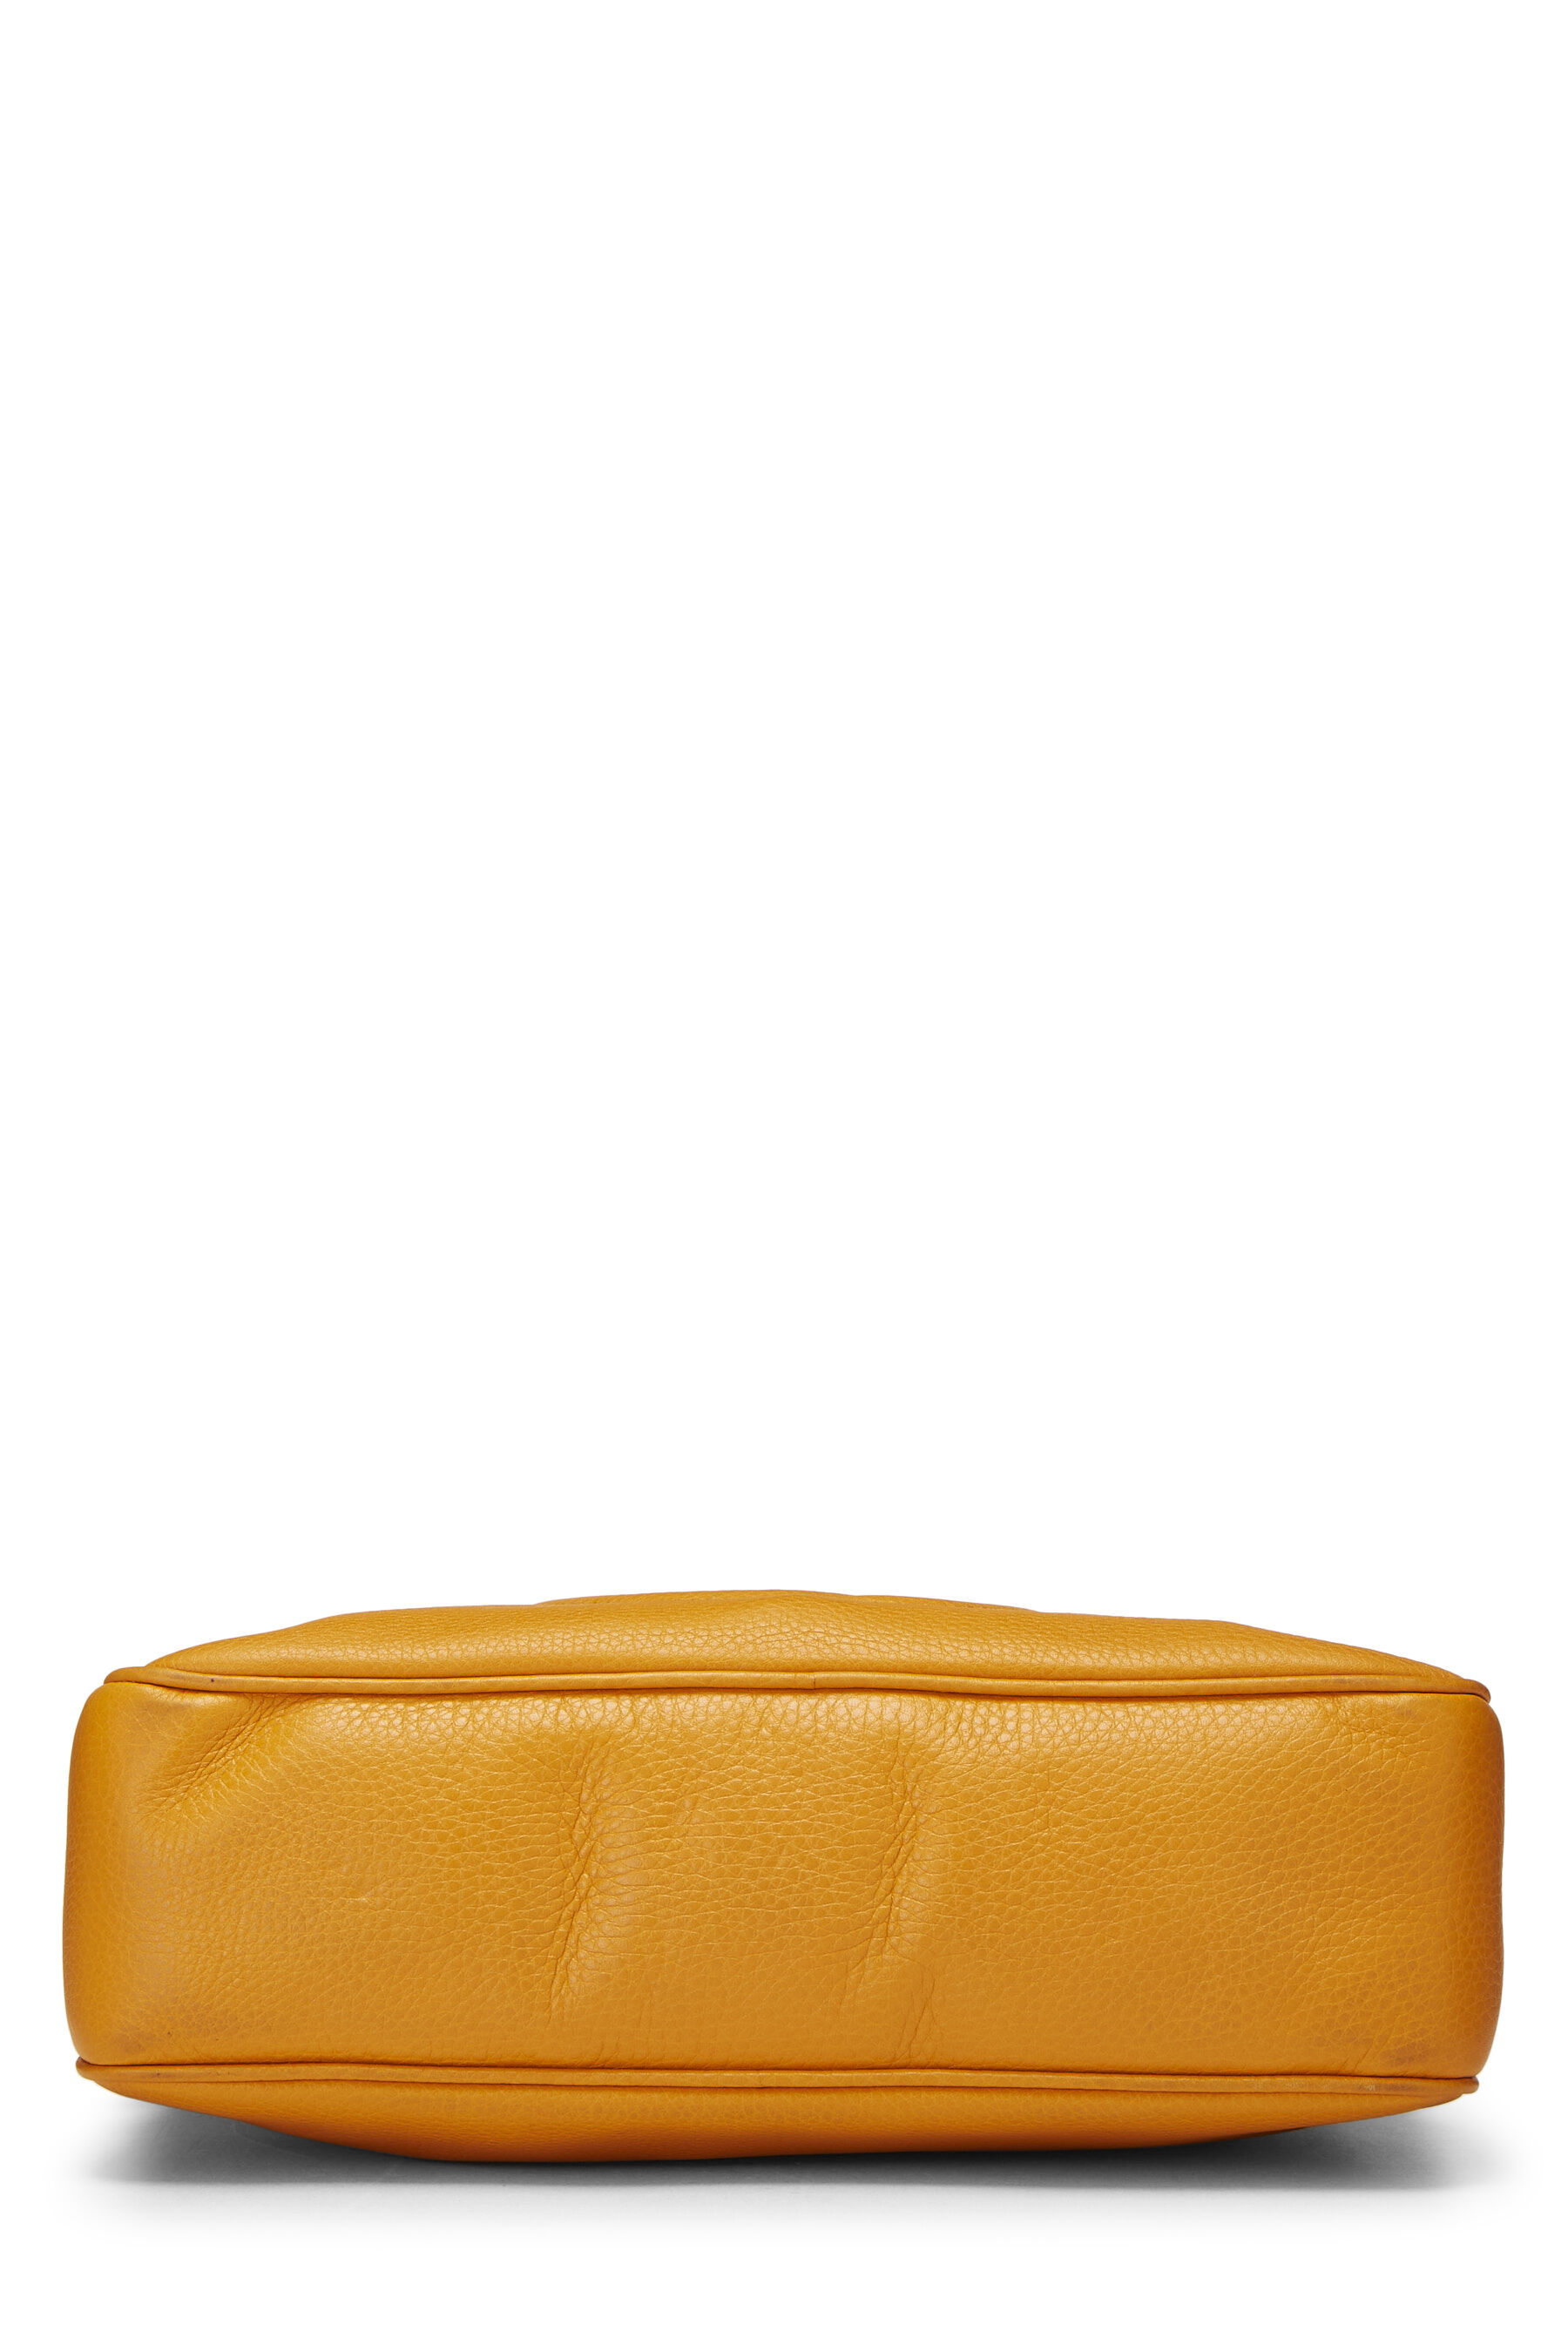 Orange Leather Soho Chain Shoulder Bag